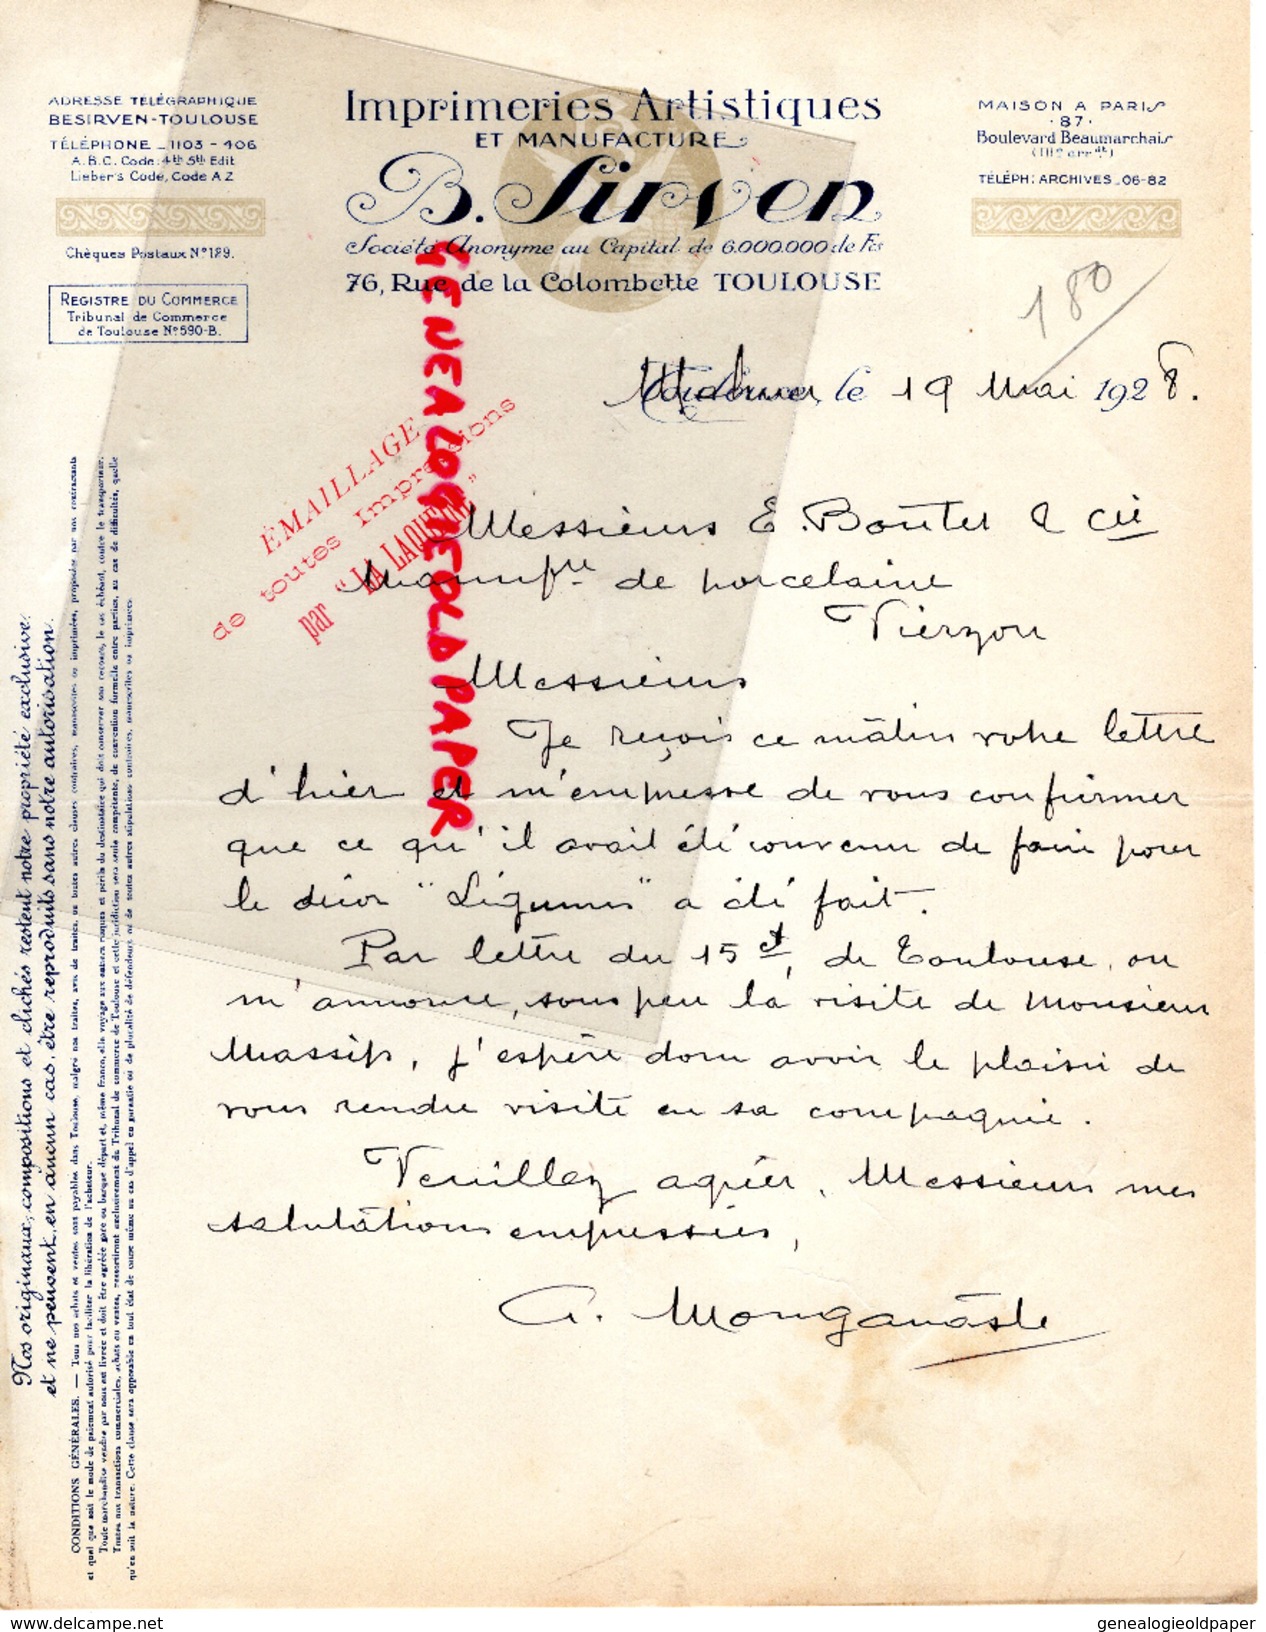 31 - TOULOUSE - B. SIRVEN- IMPRIMERIE ARTISTIQUE MANUFACTURE-76 RUE DE LA COLOMBETTE - 1928 - Imprimerie & Papeterie